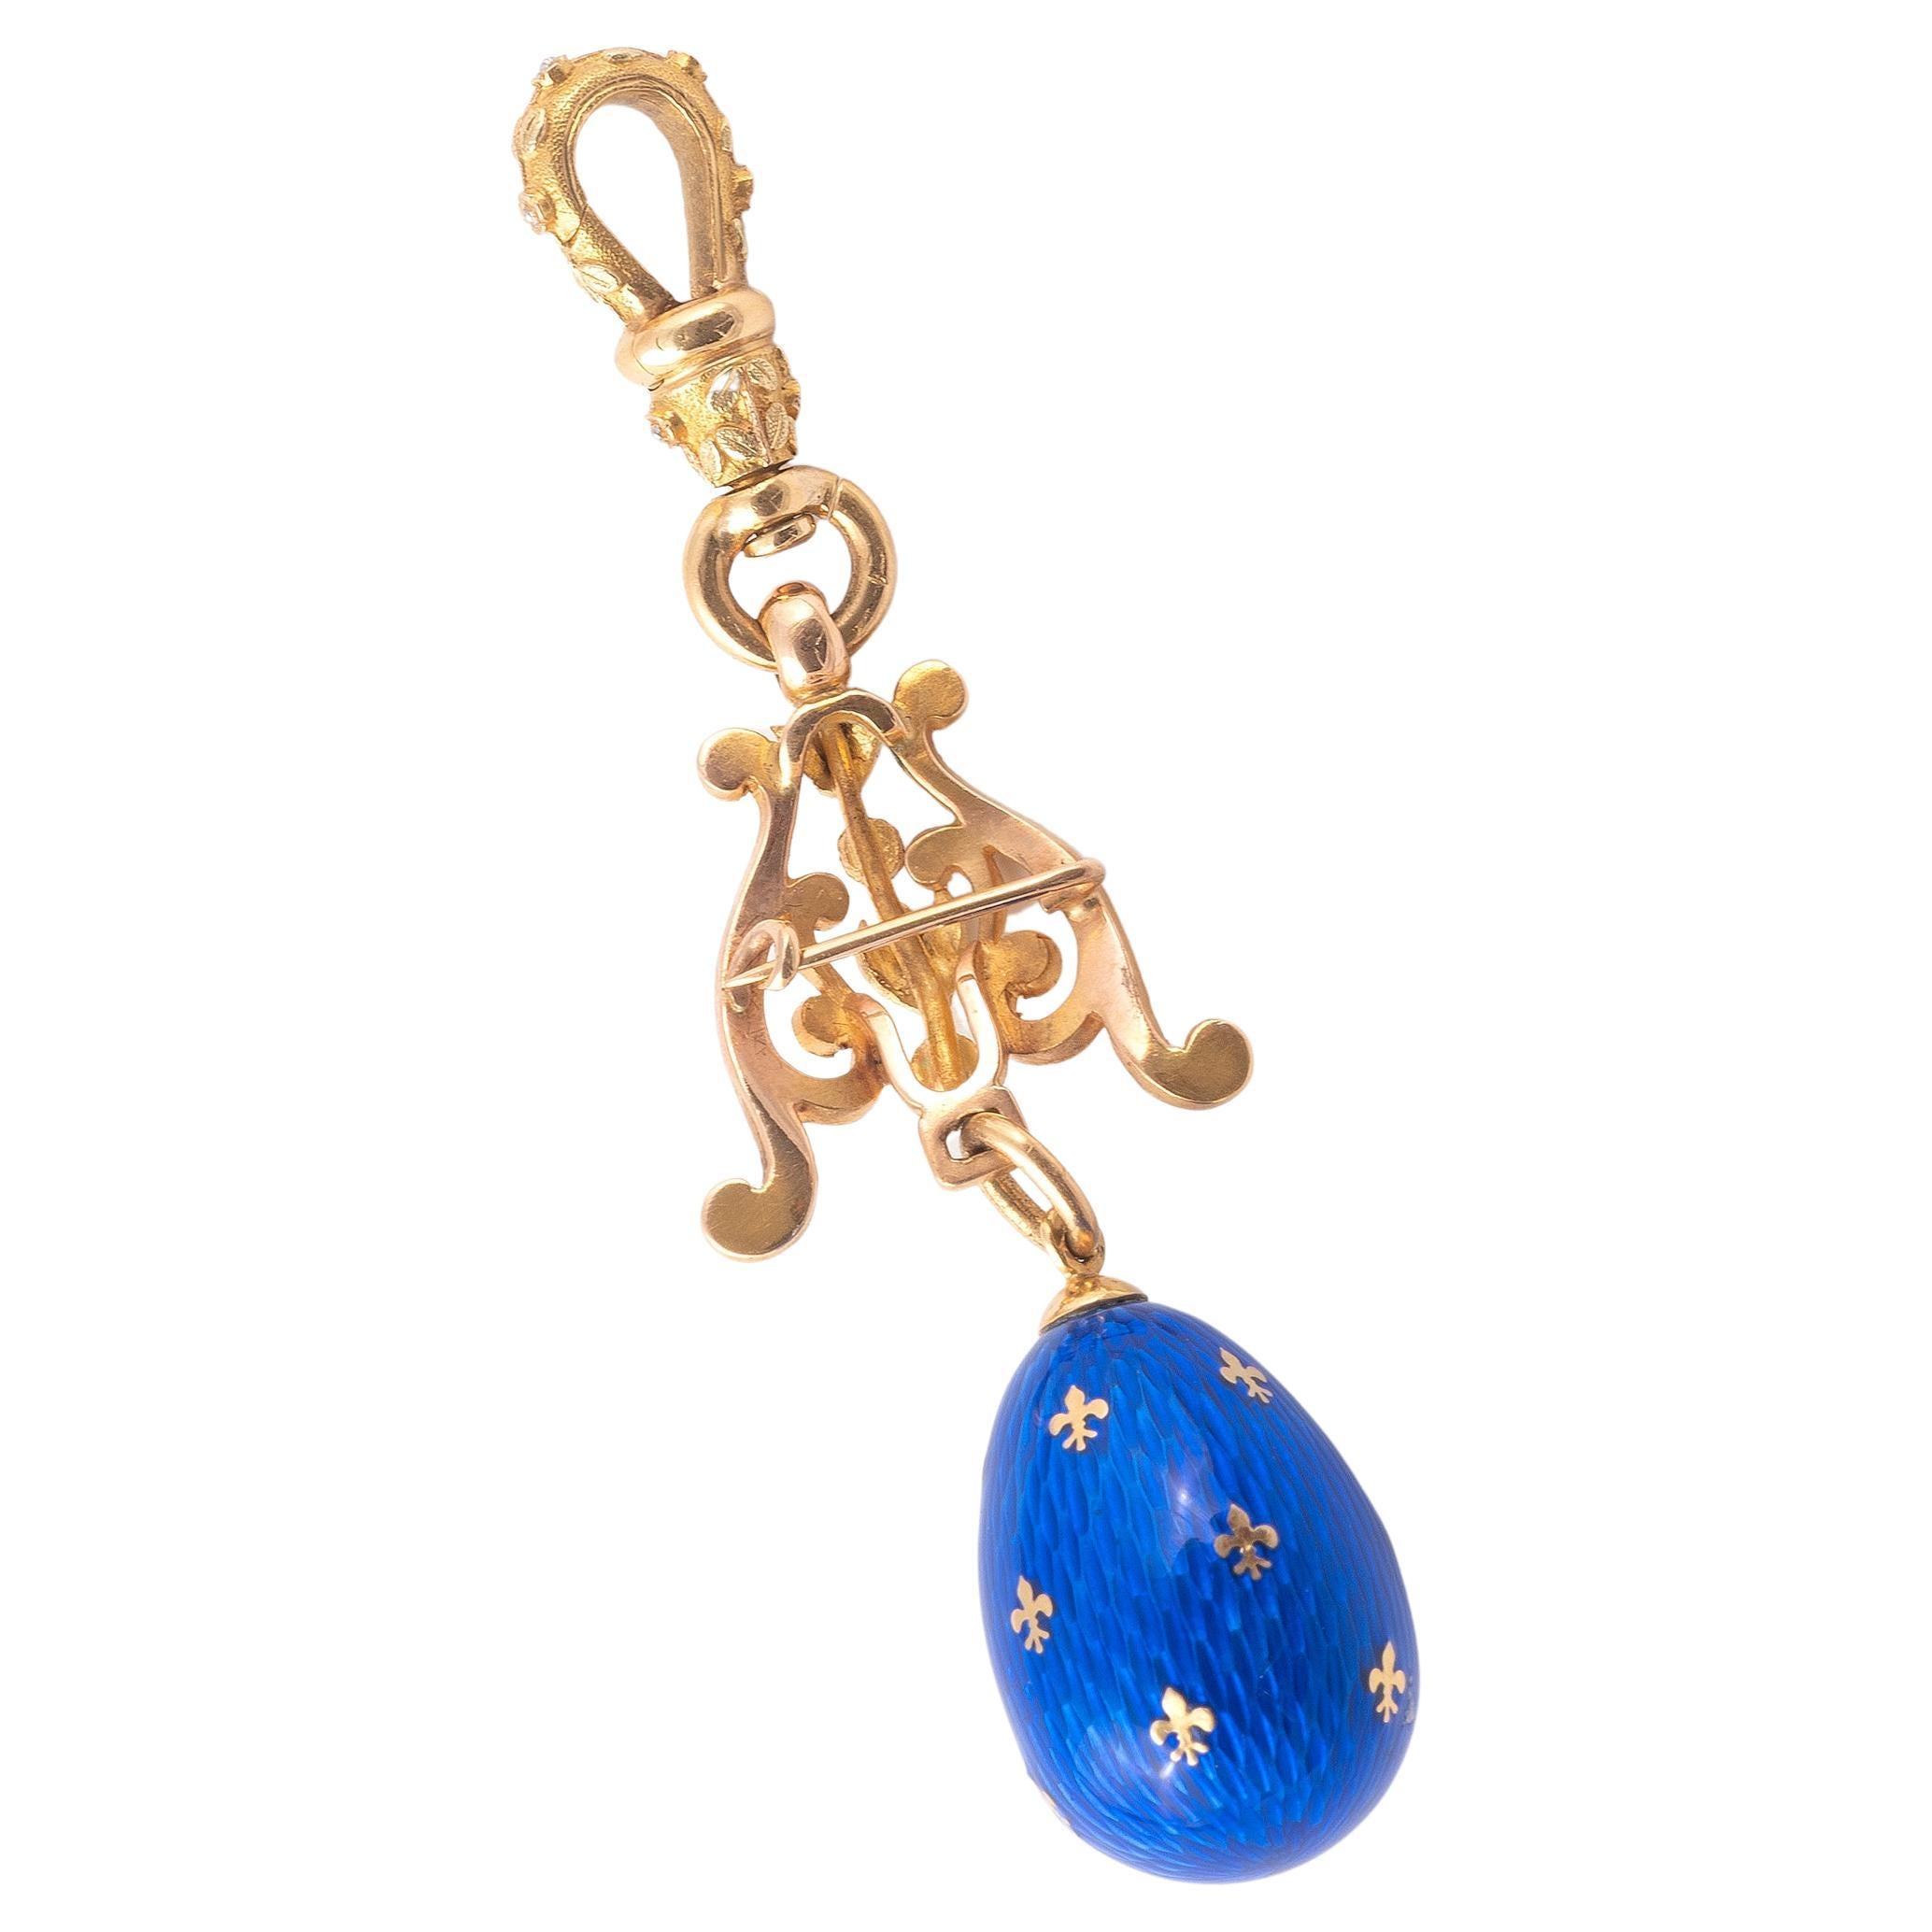 The blue guilloché enamel egg pendant, to a suspensory loop.
Length 6.00cm
